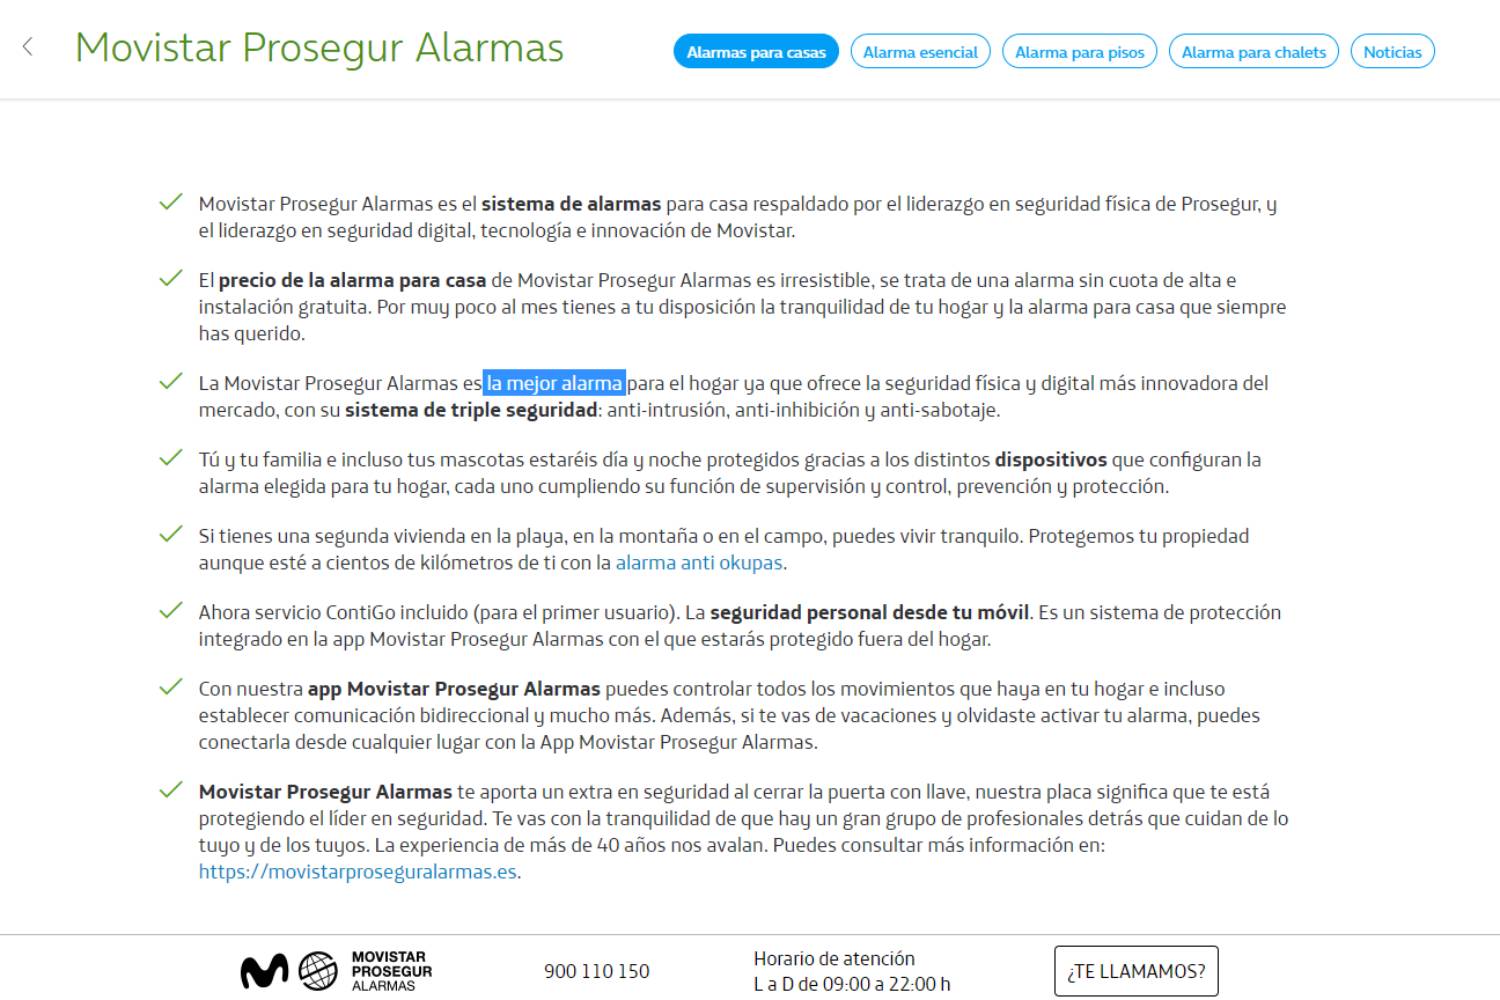 Publicidad de Movistar Prosegur Alarmas / CG